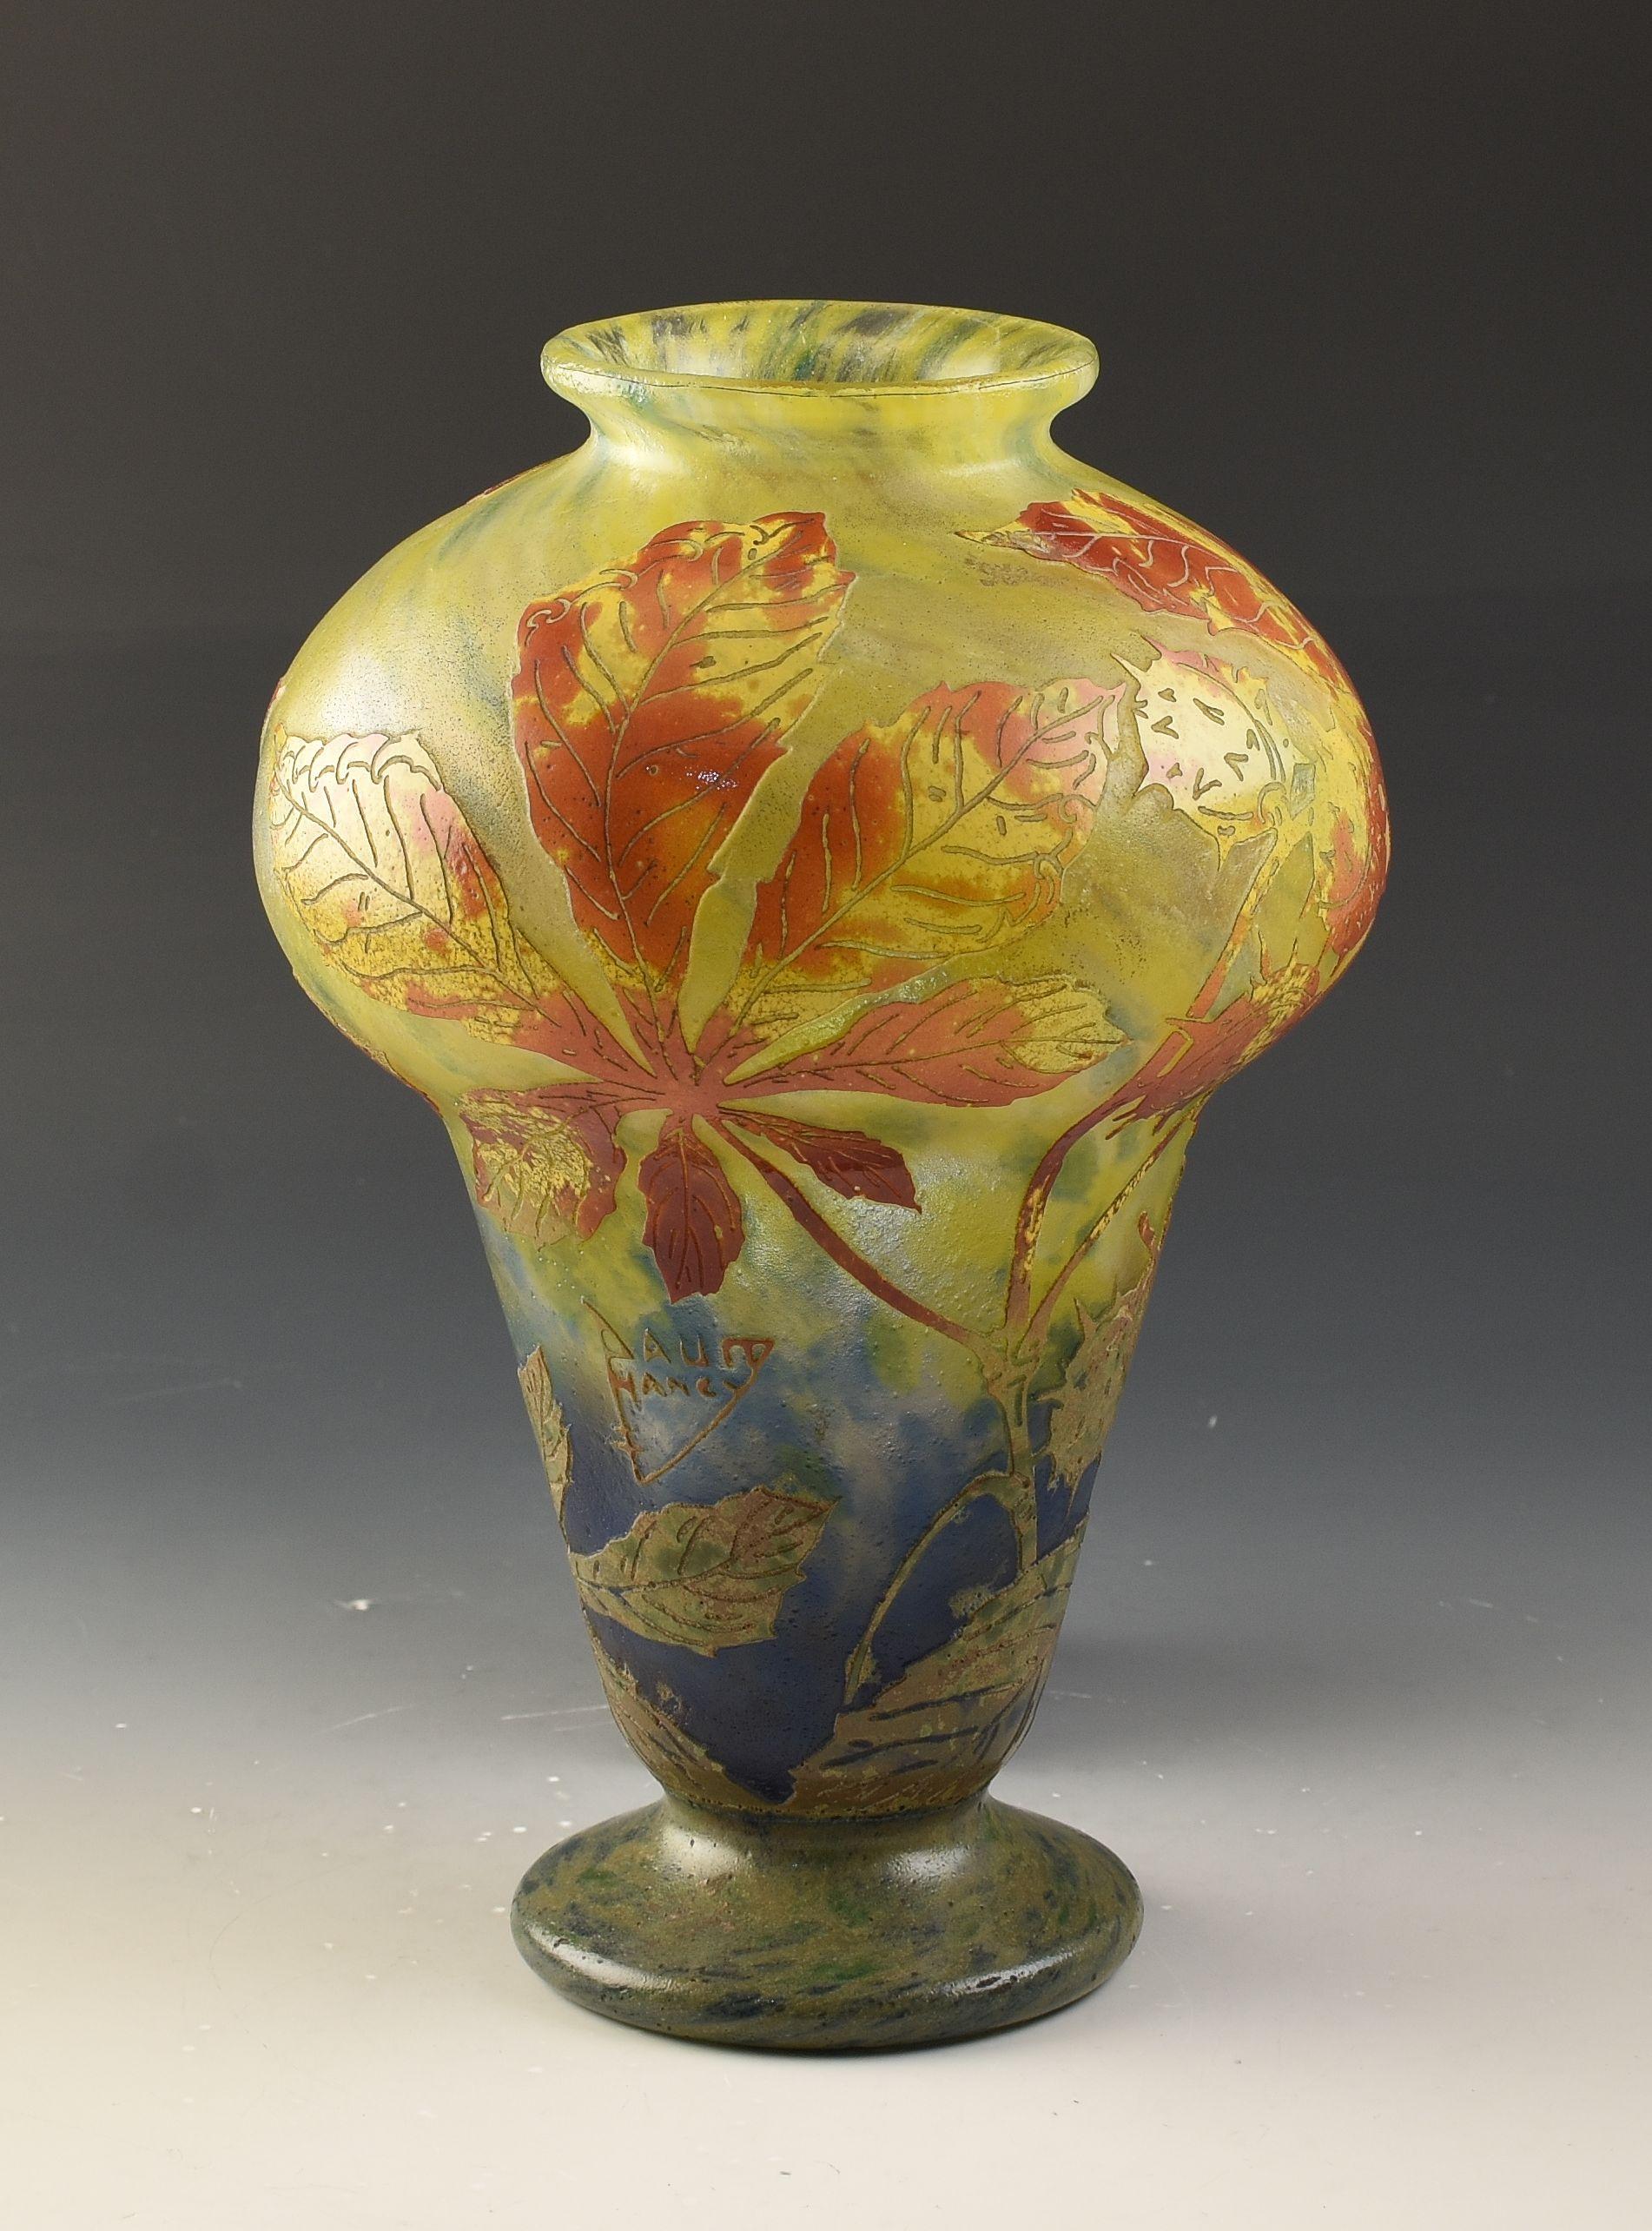 Eine schöne Daum Kamee Glasvase, die um 1900 datiert wird. Die Vase misst 25,5 cm in der Höhe, ist 19,5 cm breit und in perfektem, originalem Zustand.  Sie ist mit dem Namen Daum Nancy signiert.